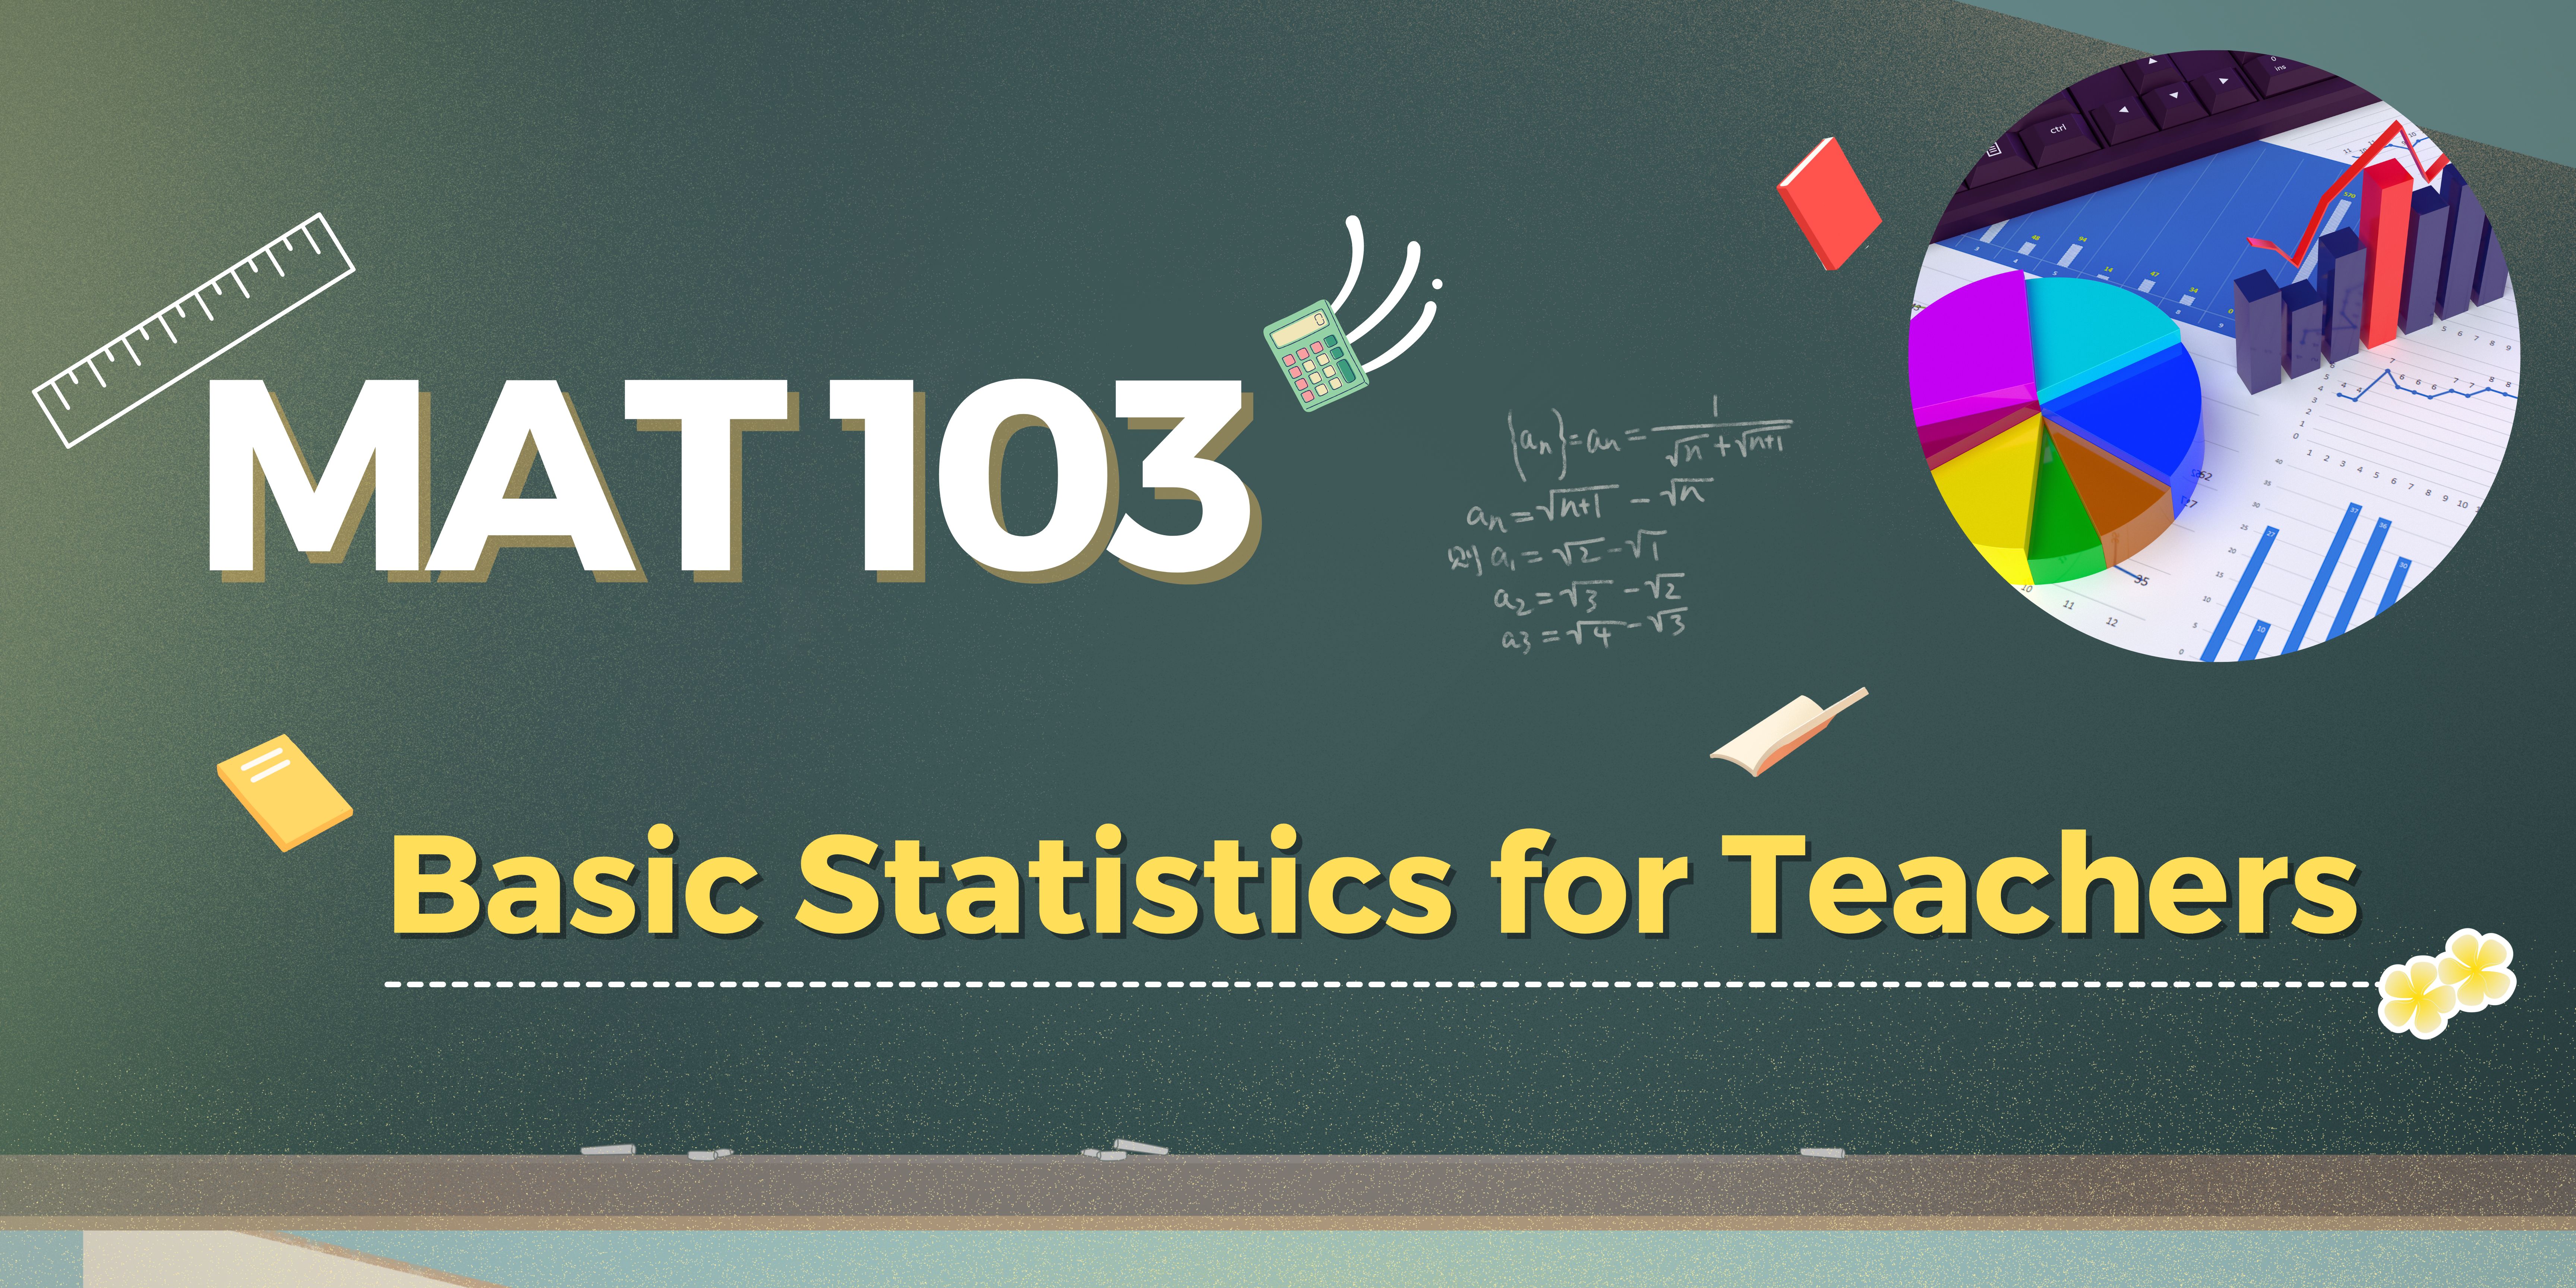 MAT103 Basic Statistics for Teachers (1/2567)